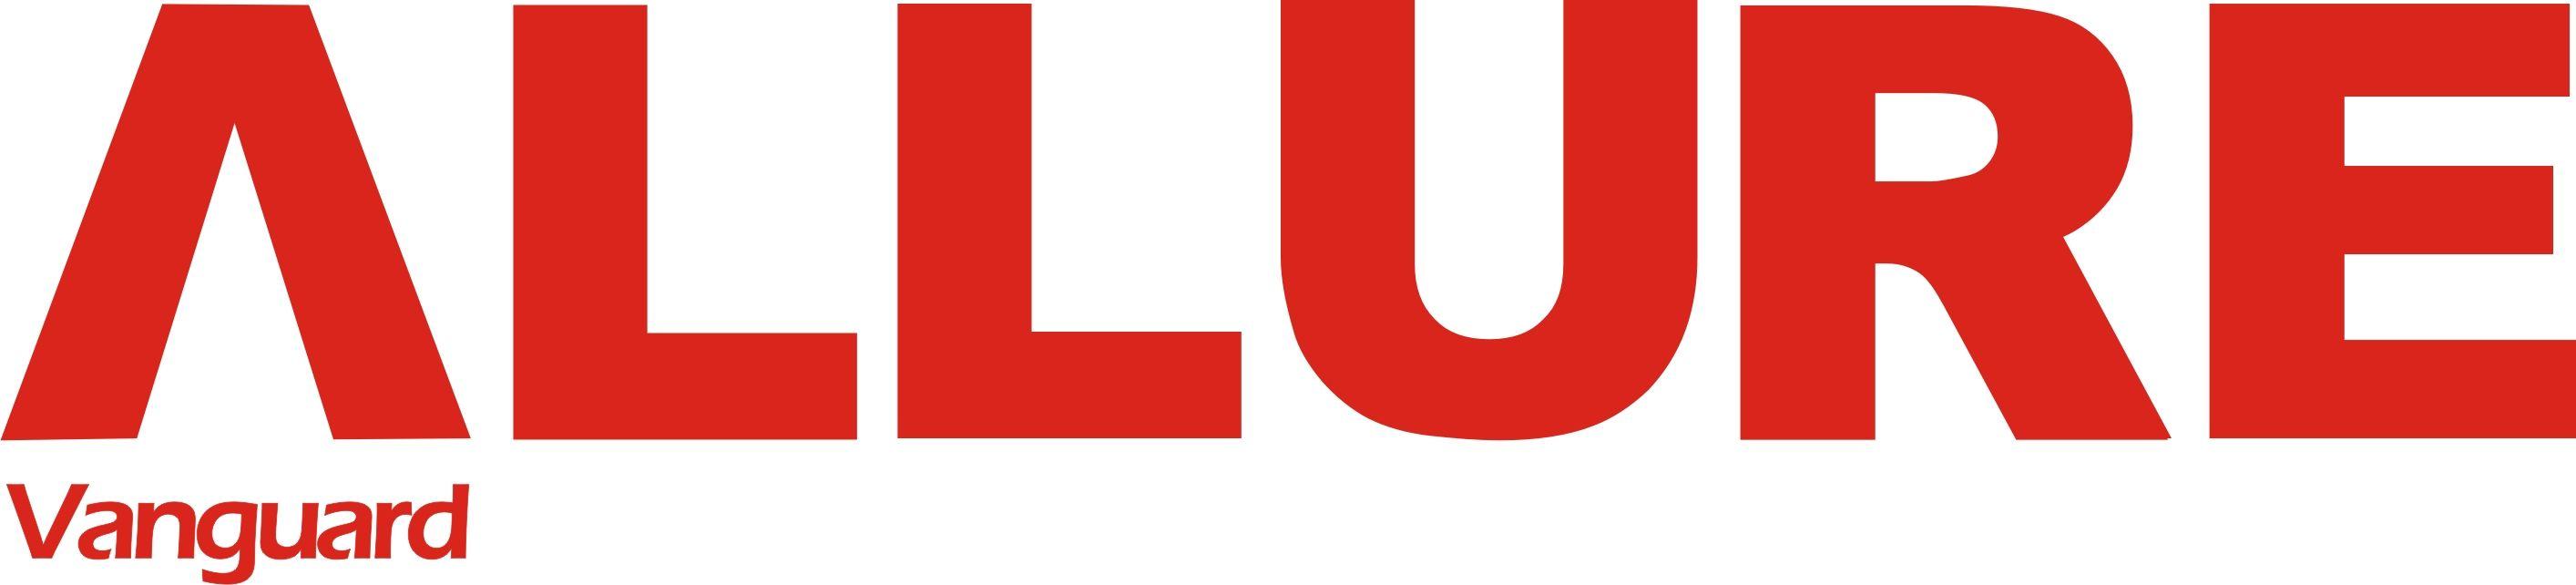 Allure.com Logo - Allure magazine Logos